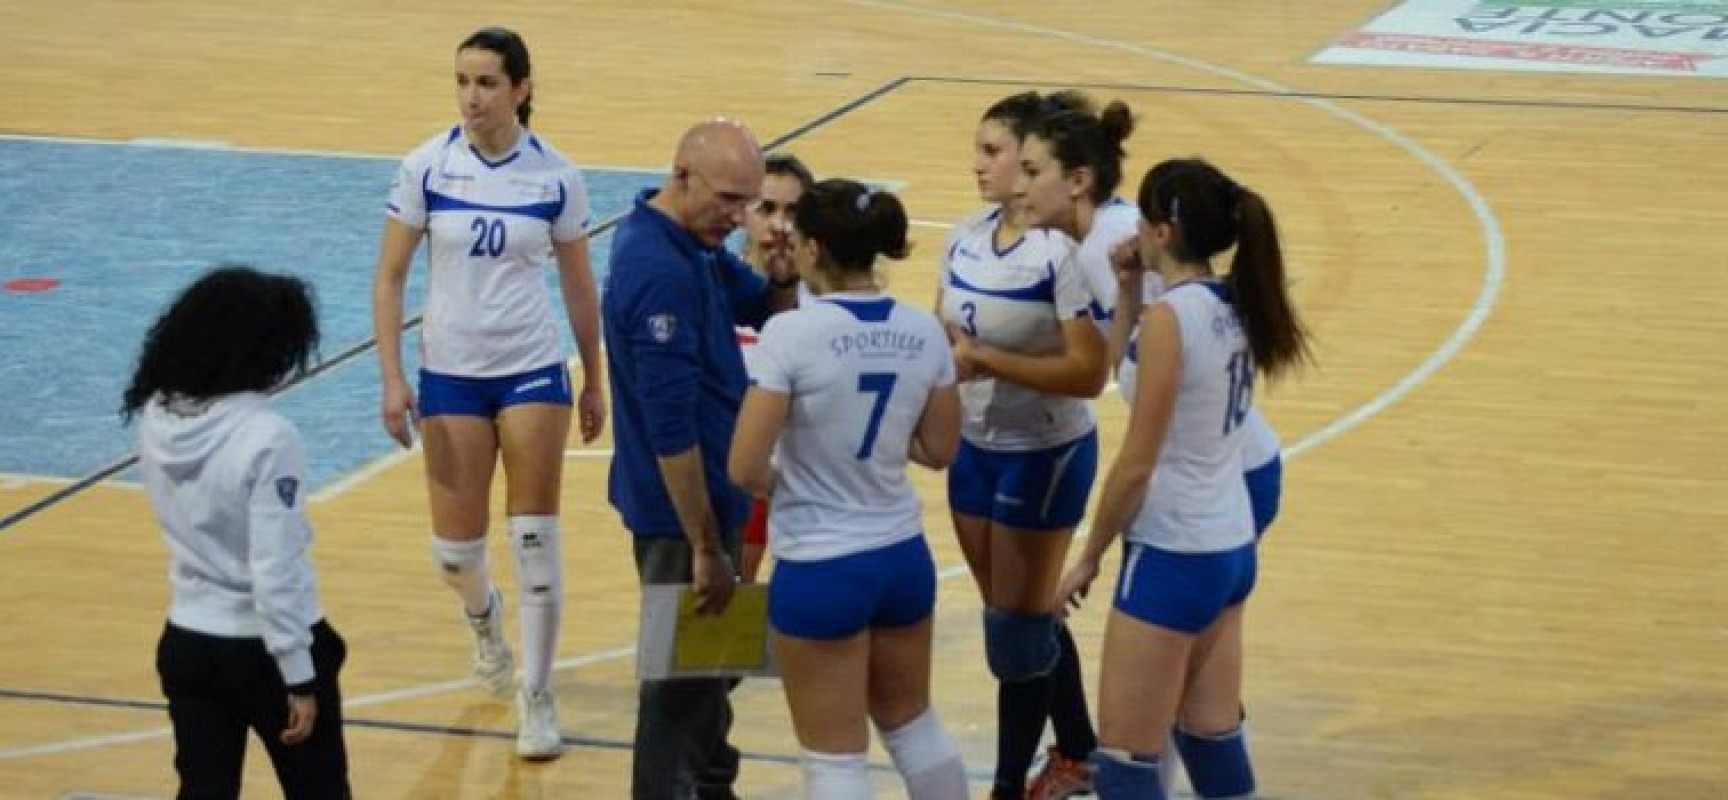 Sportilia Volley, in D l’esordio sarà a Trani/CALENDARIO